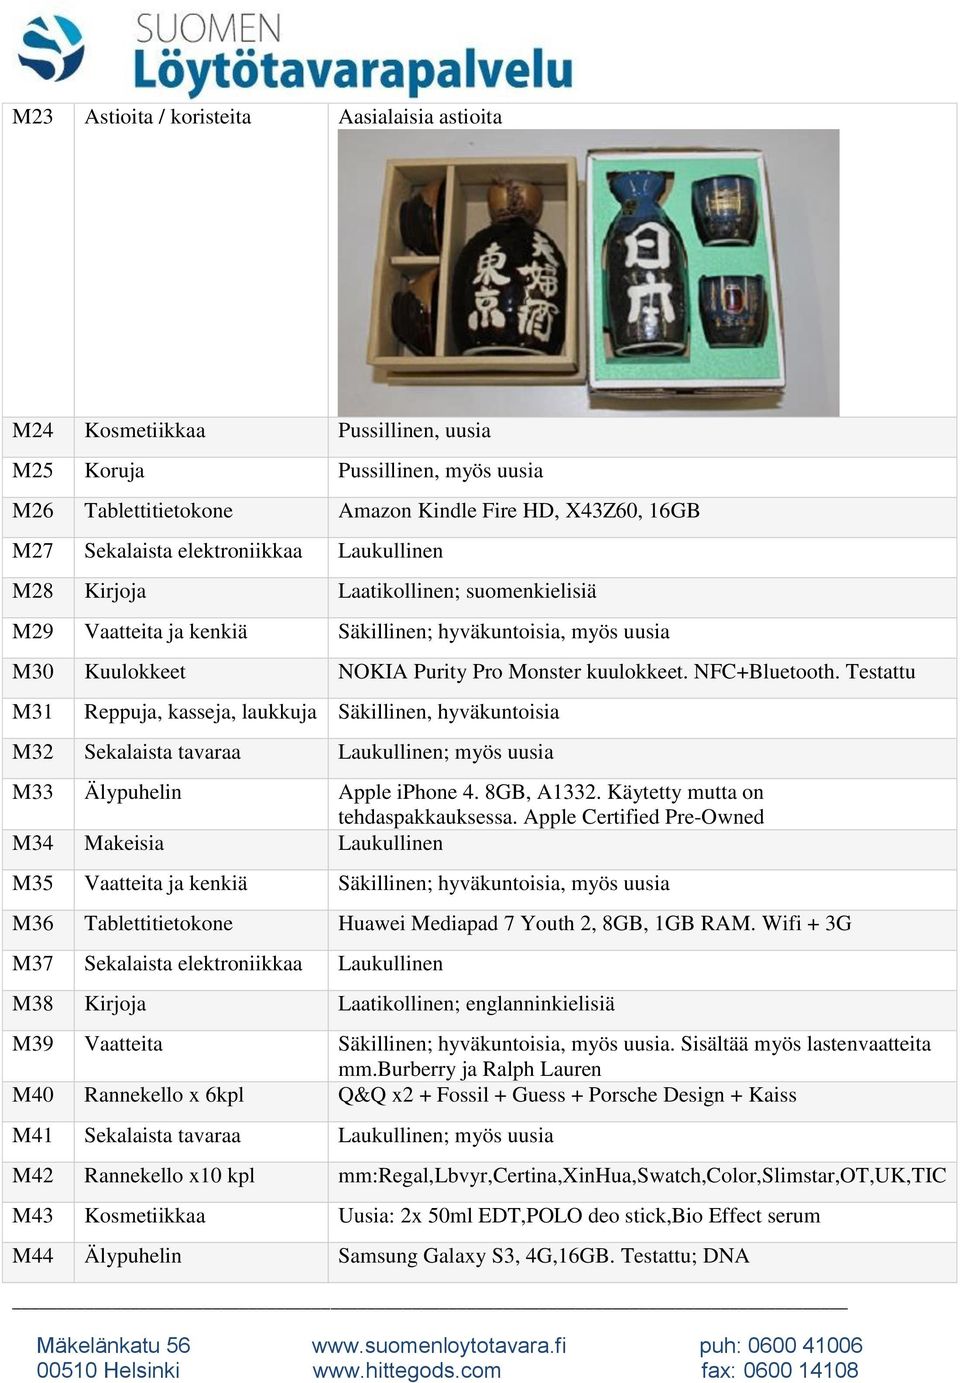 Testattu M31 Reppuja, kasseja, laukkuja Säkillinen, hyväkuntoisia M32 Sekalaista tavaraa ; myös uusia M33 Älypuhelin Apple iphone 4. 8GB, A1332. Käytetty mutta on tehdaspakkauksessa.